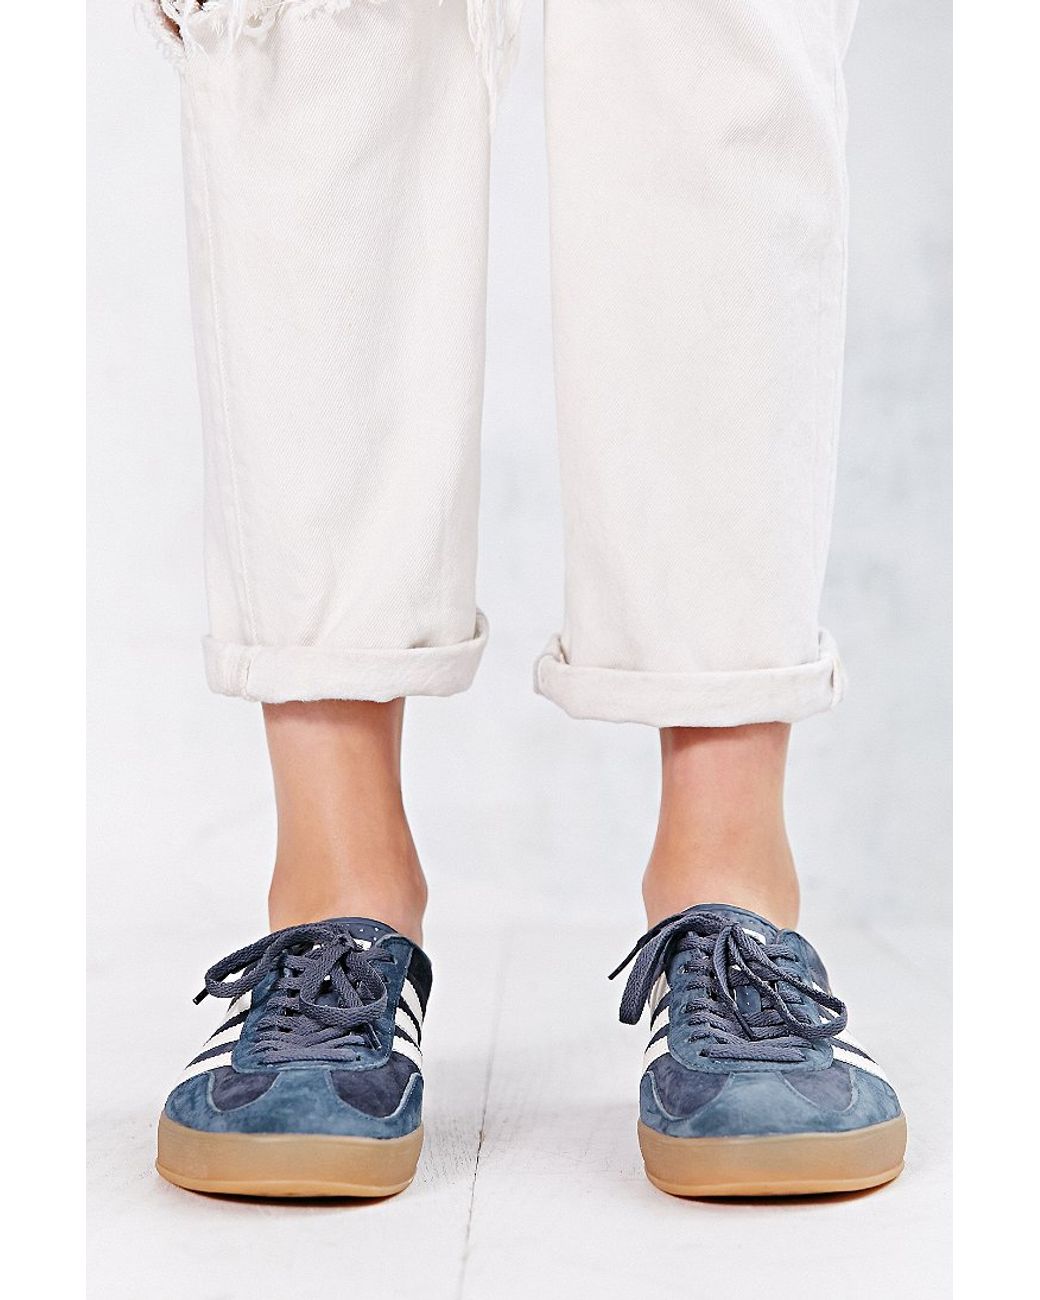 adidas Originals Gazelle Gum-Sole Indoor Sneaker in Grey (Gray) | Lyst